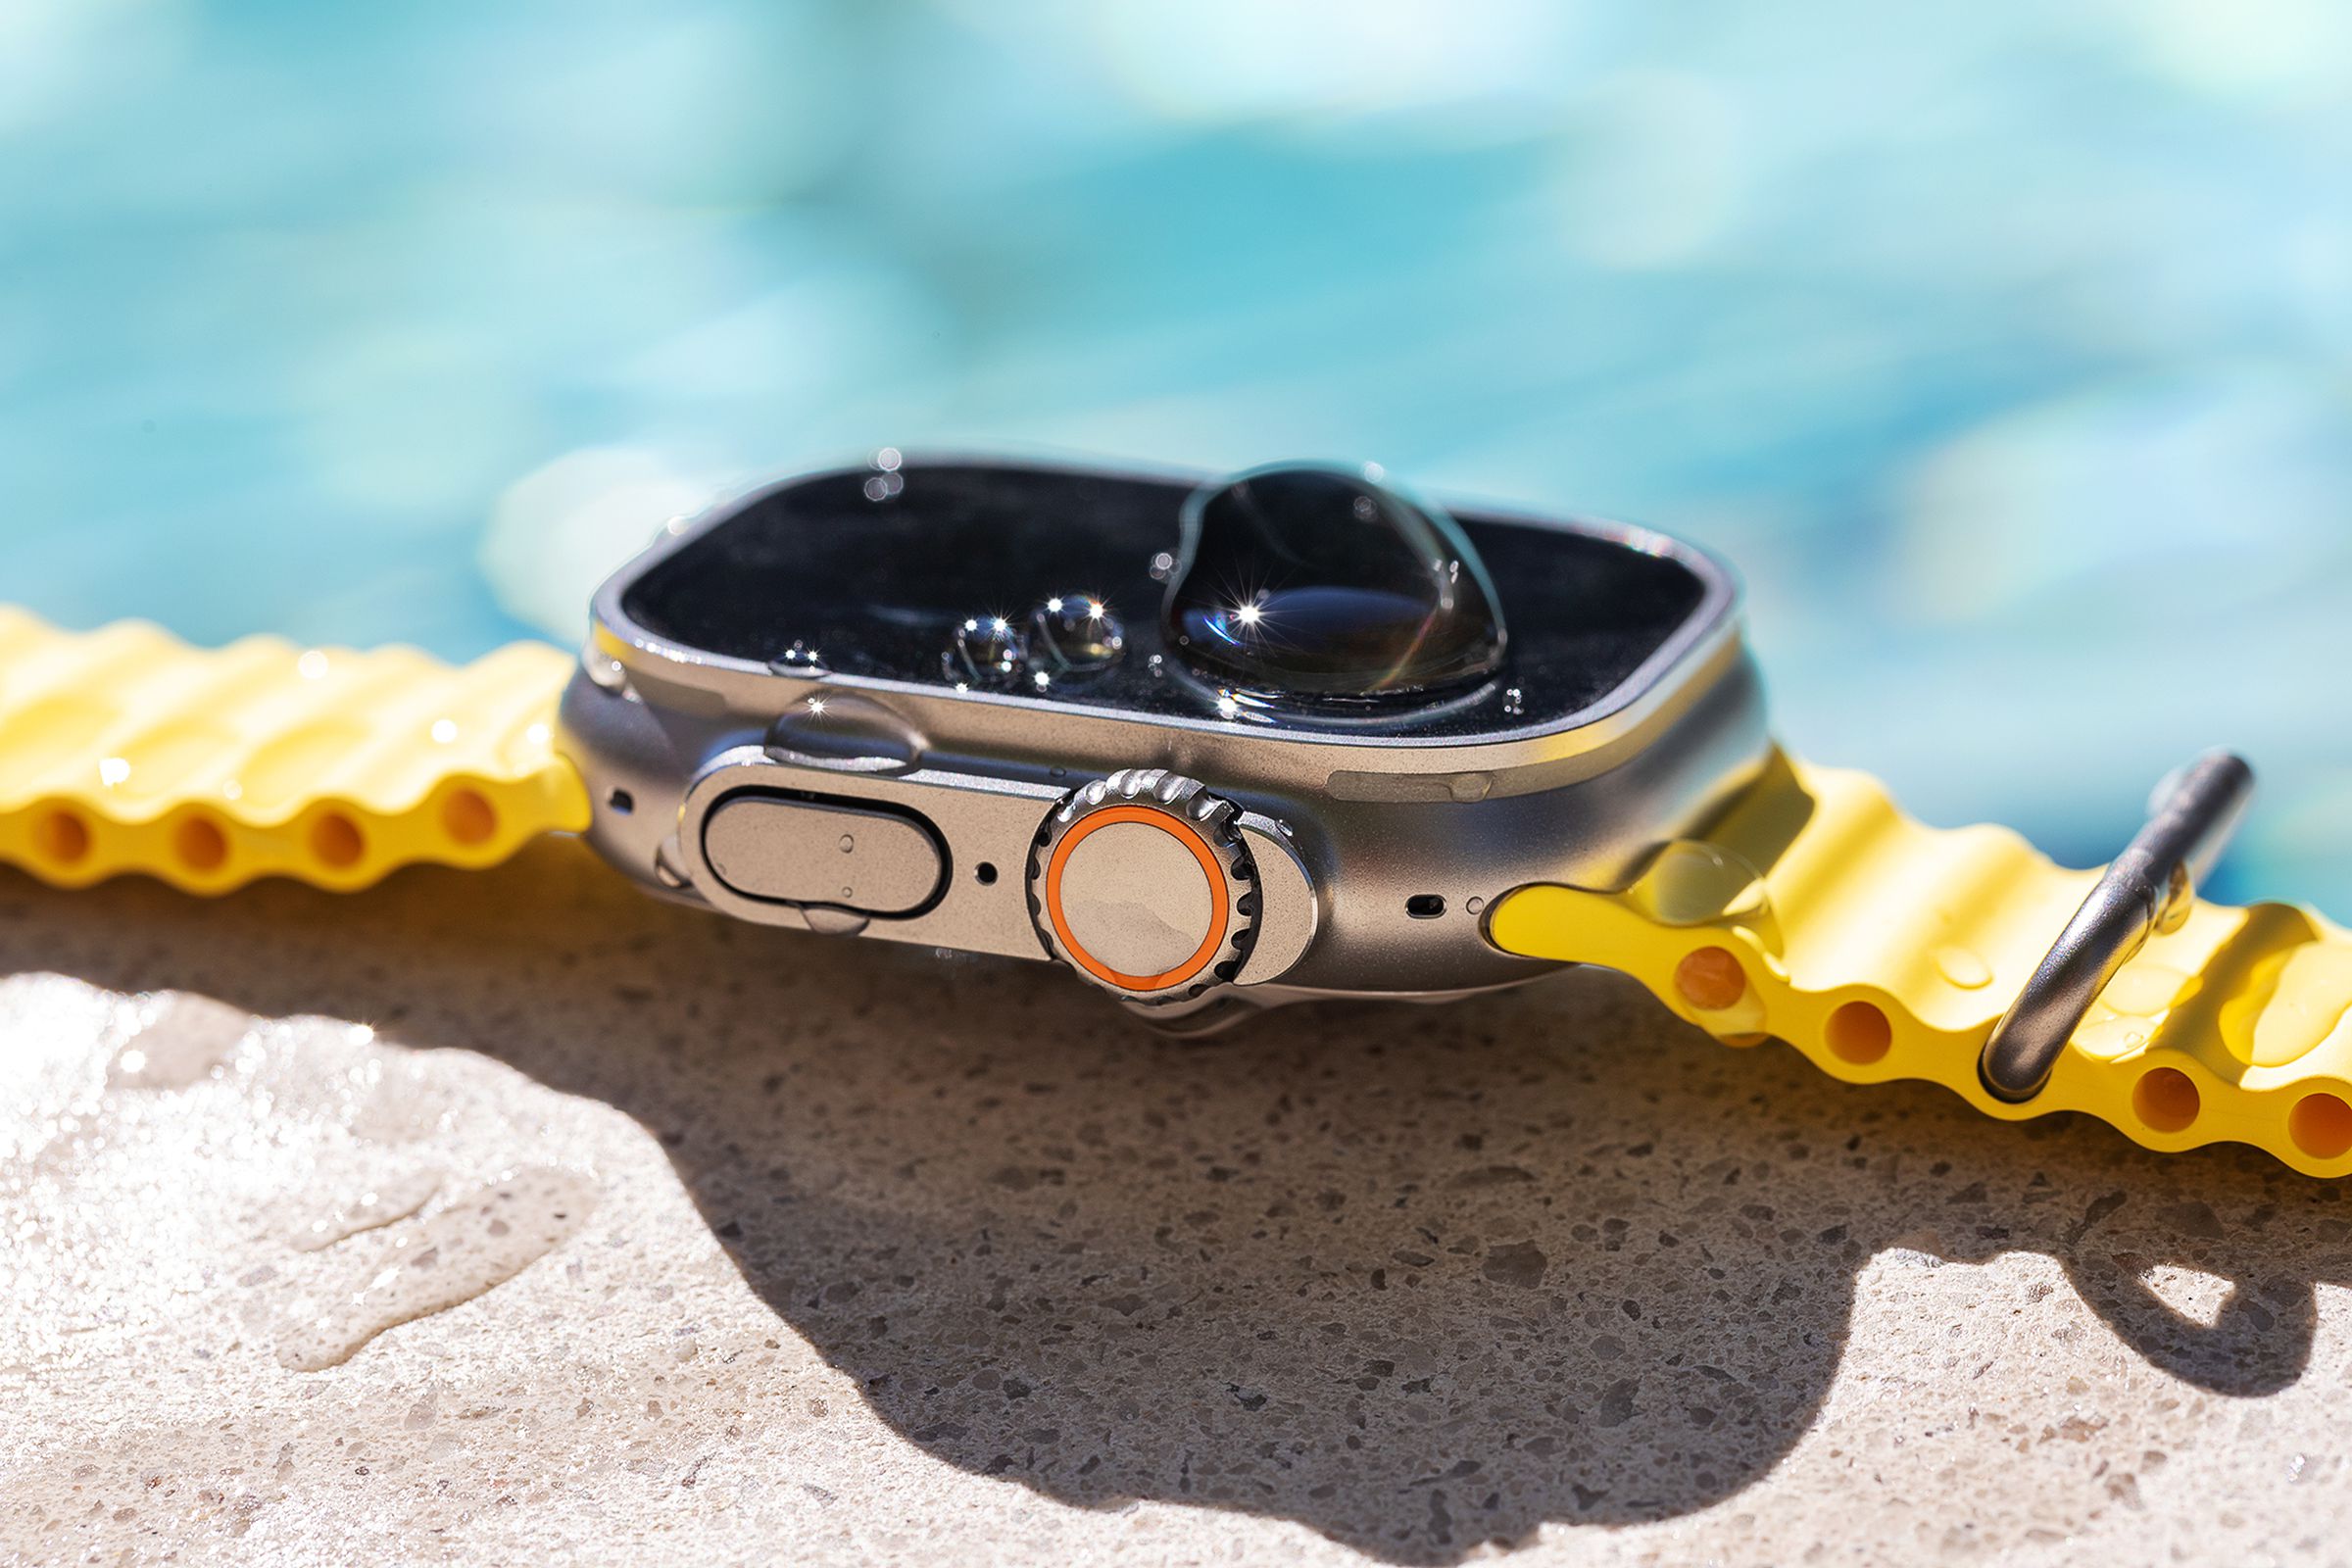 منظر جانبي لـ Apple Watch مع شريط Ocean عند حوض السباحة